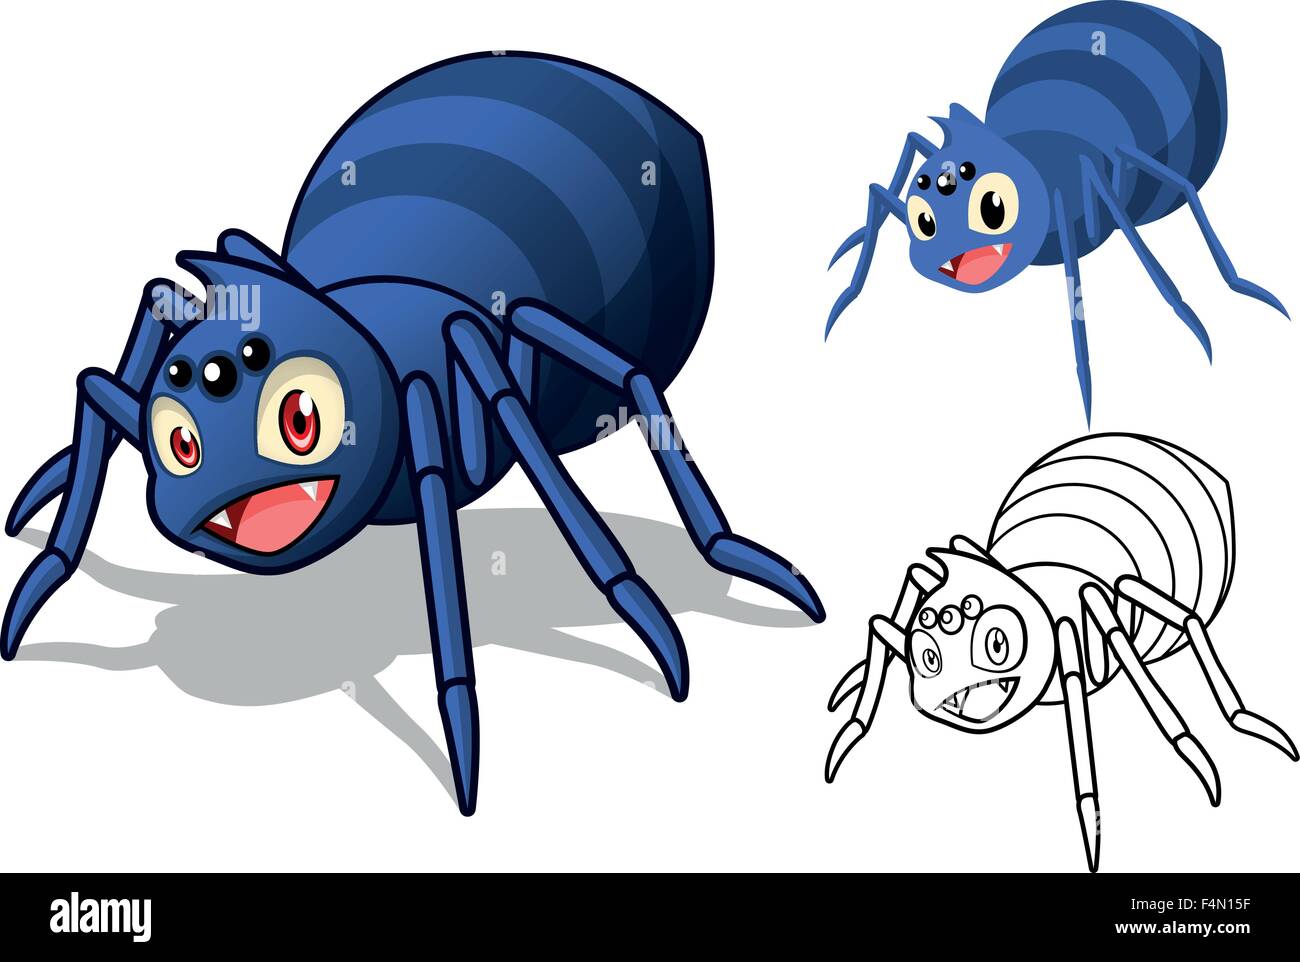 Cartone animato ragno immagini e fotografie stock ad alta risoluzione -  Alamy